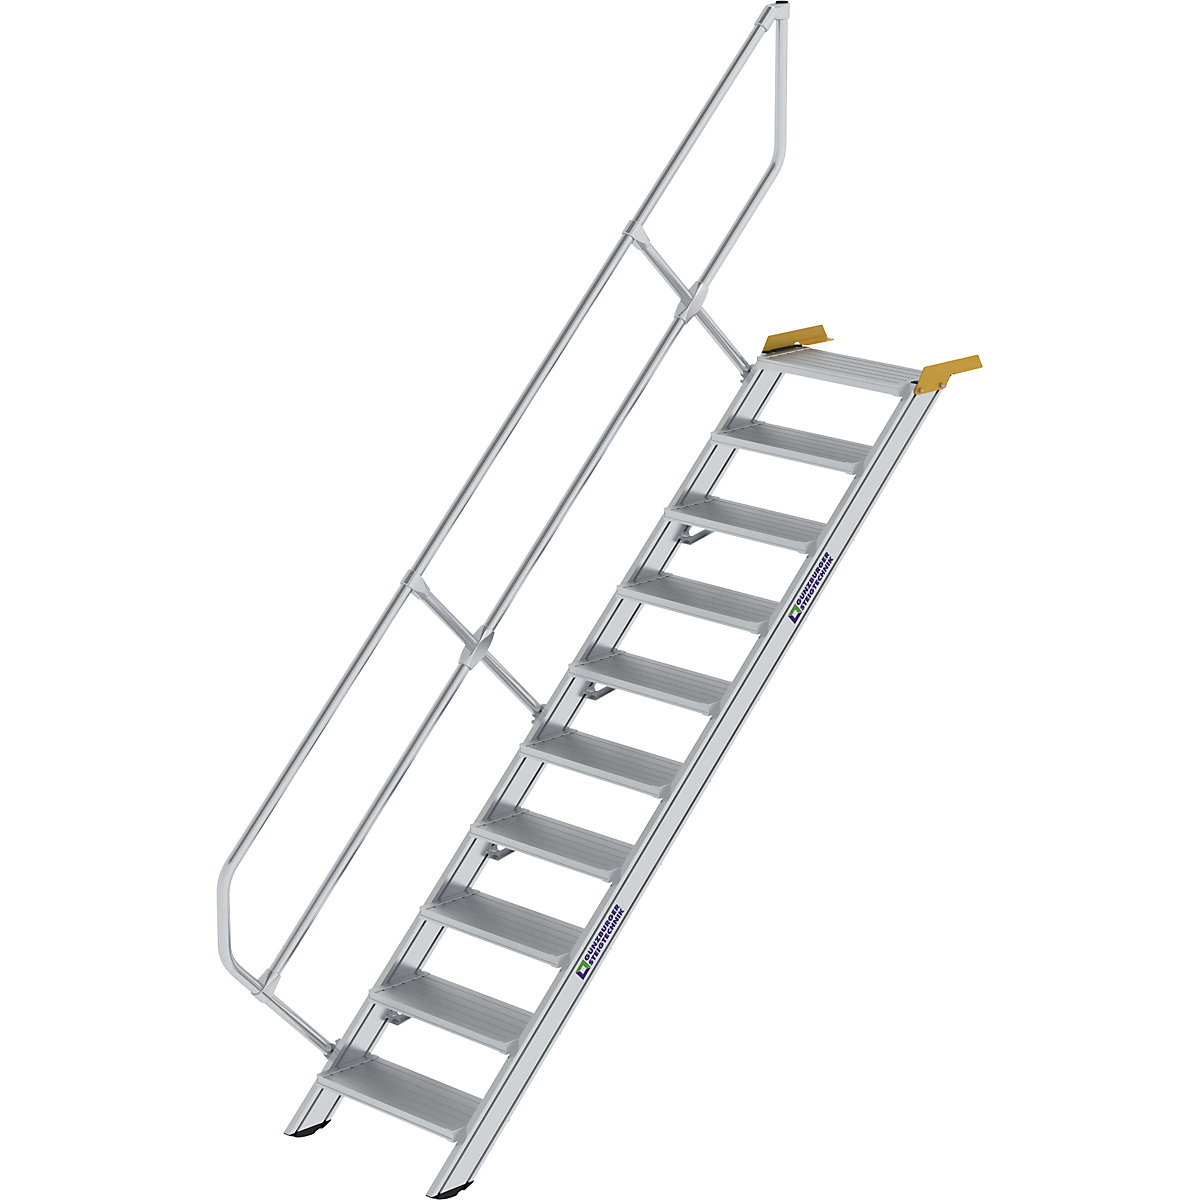 Industrijske stopnice – MUNK, aluminijaste stopnice širine 800 mm, 10 stopnic-6